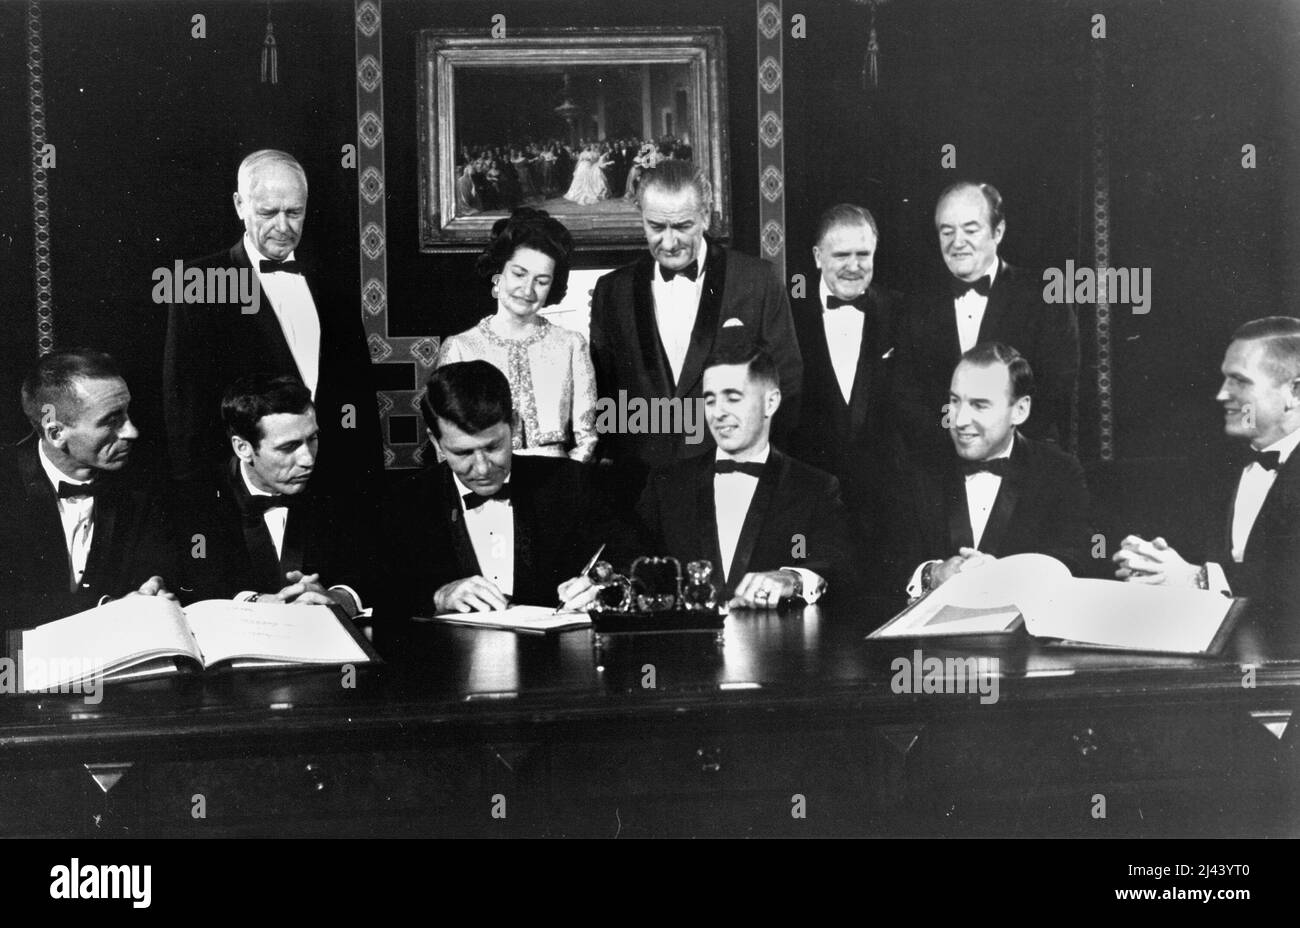 Les équipages de conduite Apollo 7 et 8 signent un document commémoratif qui sera accroché à la salle des traités de la Maison Blanche pour honorer l'occasion. Ces signatures sont de gauche à droite : les astronautes Apollo 7 : Walter Cunningham, Donn F. Eisele et Walter M. Schirra. Les astronautes d'Apollo 8 : William A. Anders, James A. Lovell, Jr., et Frank Borman. Sont debout : Charles A. Lindbergh (également signataire), Lady Bird Johnson, le président Lyndon B. Johnson, l'administrateur de la NASA James E. Webb et le vice-président Hubert H. Humphrey. Banque D'Images